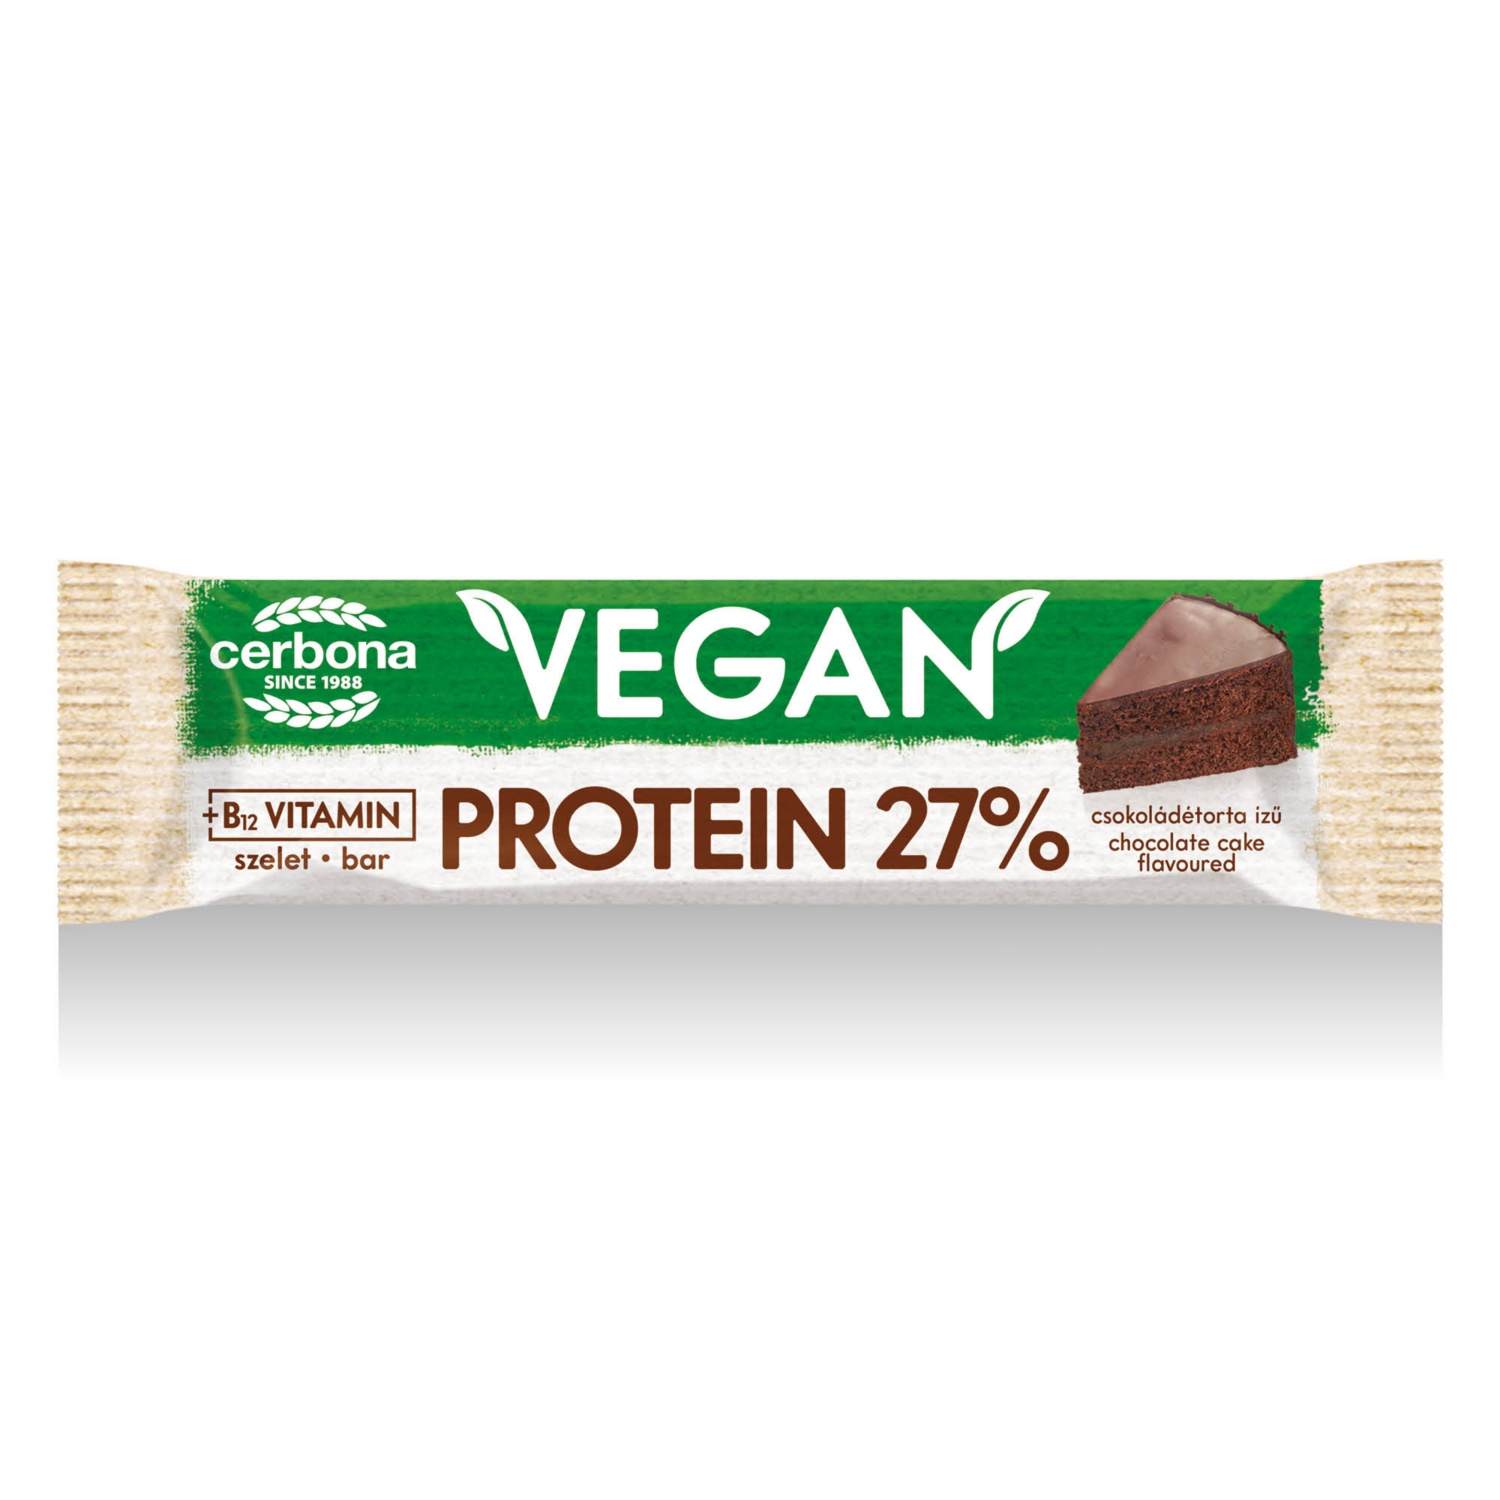 CERBONA Vegán proteinszelet 40 g, csokoládétorta ízű